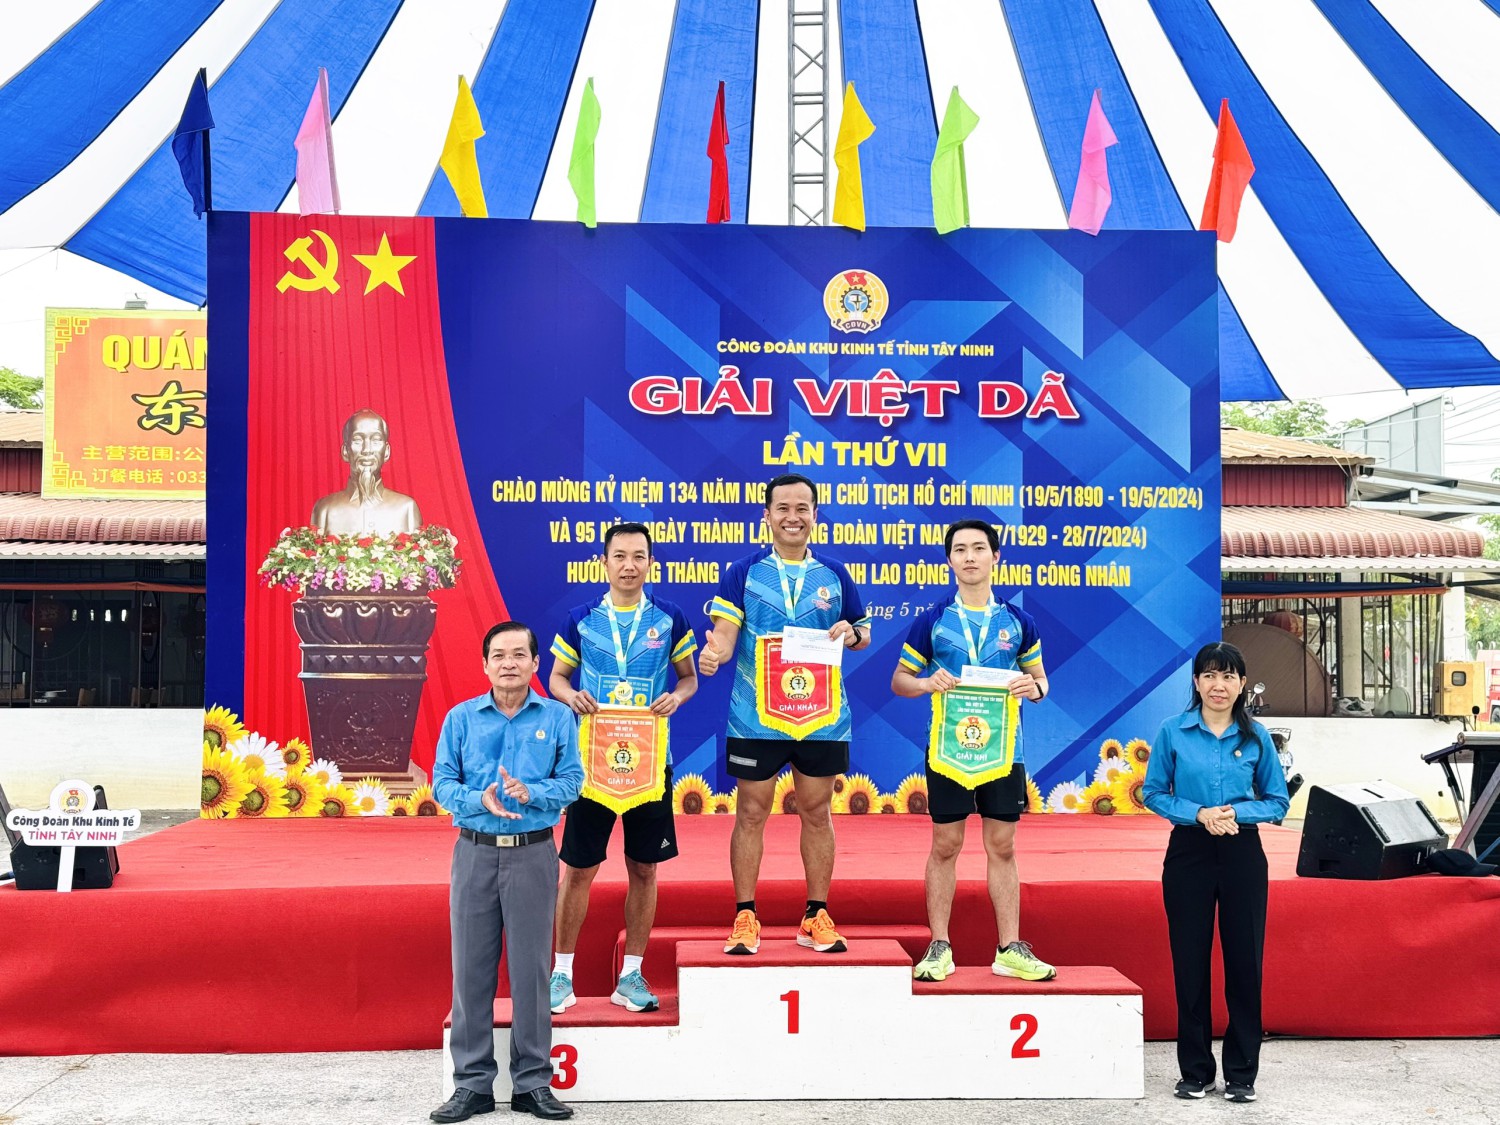 Gần 700 vận động viên tham gia giải Việt dã lần thứ VII năm 2024